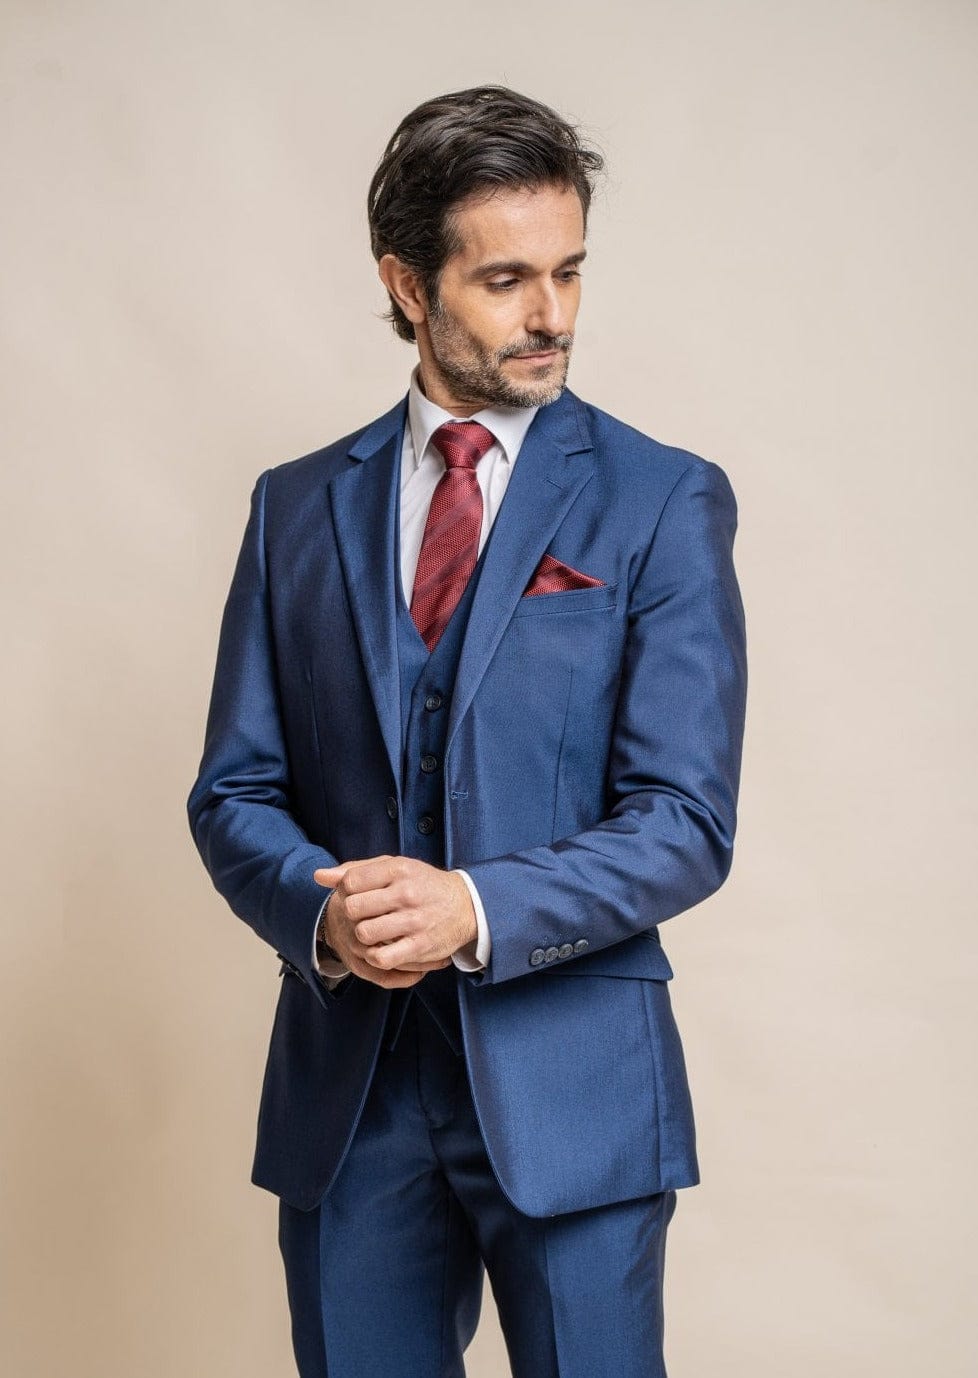 3-Piece Suits For Men | Menz Suits